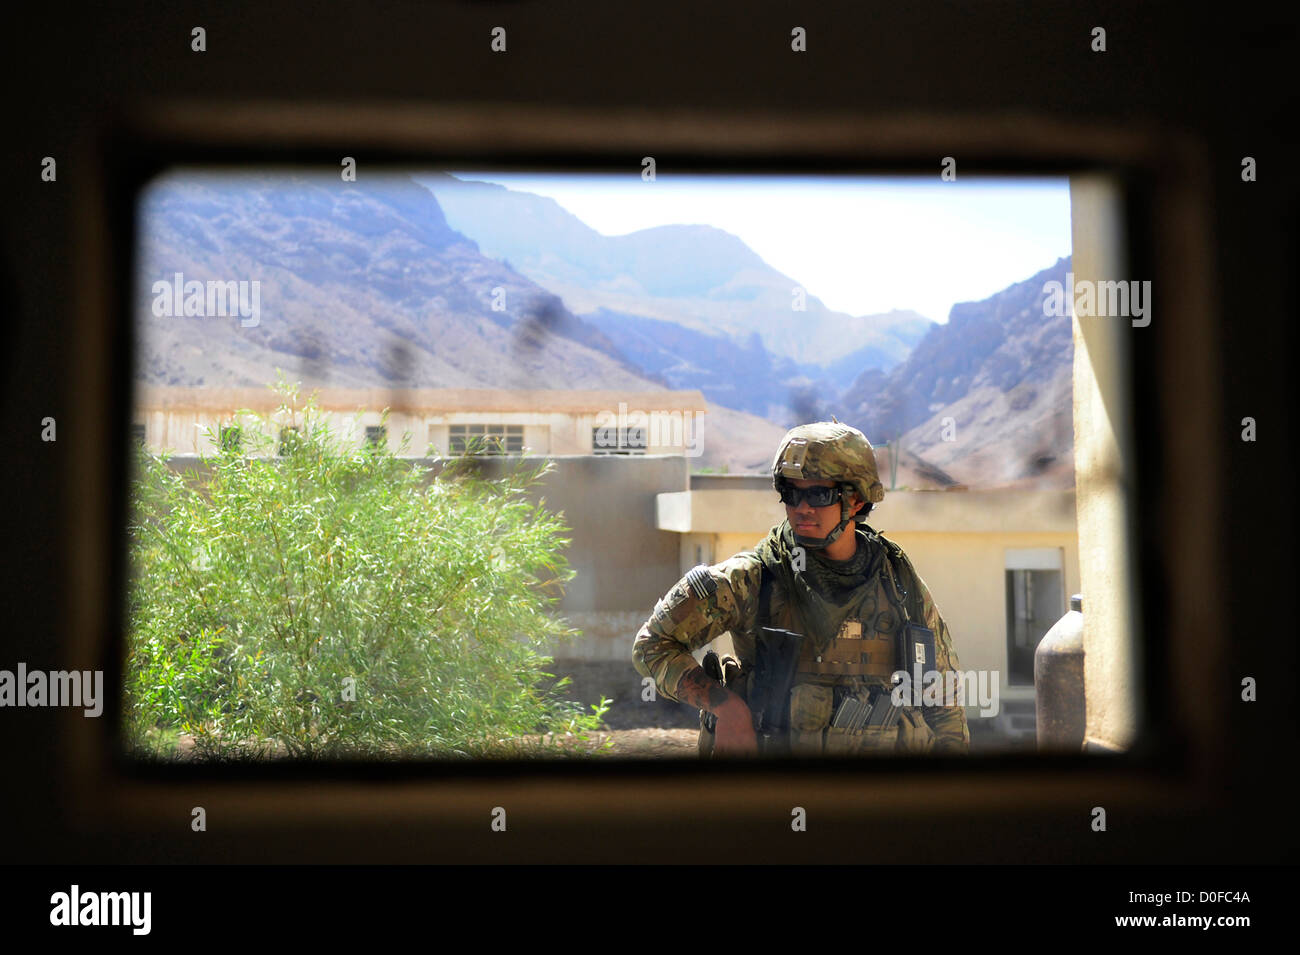 Corpsman US Navy un composé garde vue à travers la fenêtre d'un véhicule blindé, 26 septembre 2012 au cours d'une mission à Chaman Pur, district de la province de Farah, l'Afghanistan. La mission est la première fois que les forces de la coalition ont été pour le district de Chaman pur dans plus d'un an. Banque D'Images